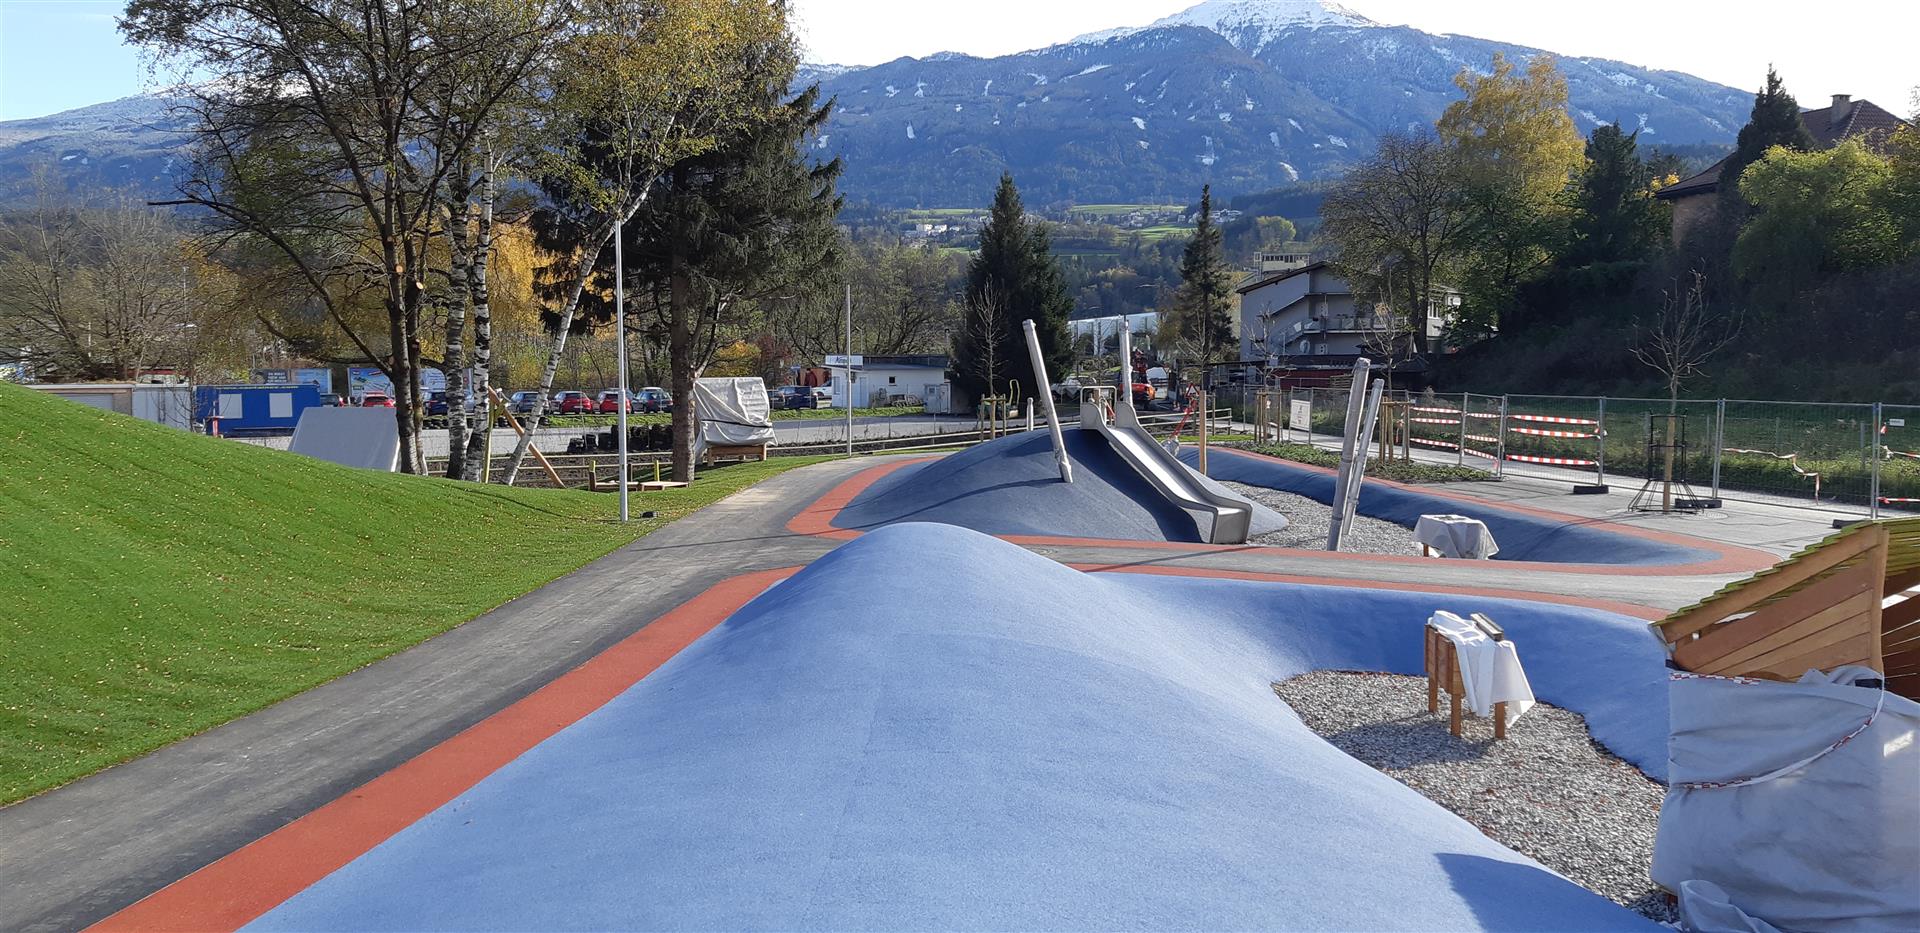 Freizeitpark, Innsbruck - Inžinierske stavby